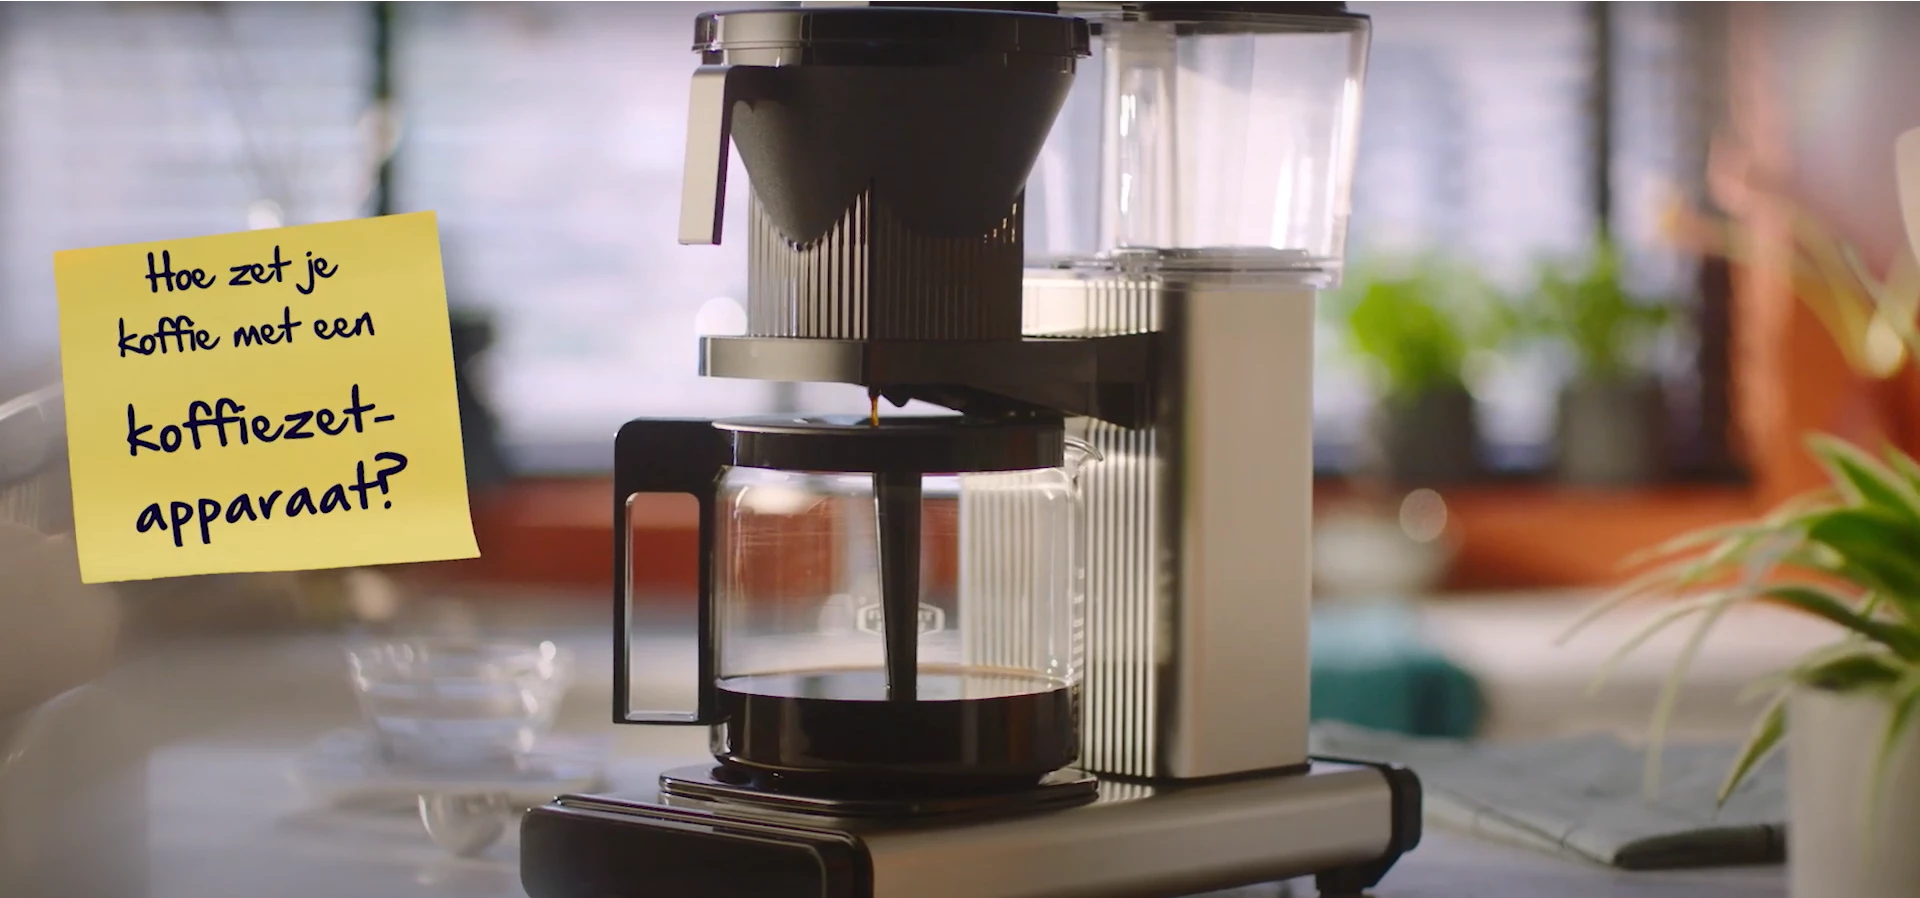 Ouderwets koffiezetapparaat met een gele memo met daarop de tekst: Hoe zet je koffie met een koffiezetapparaat?